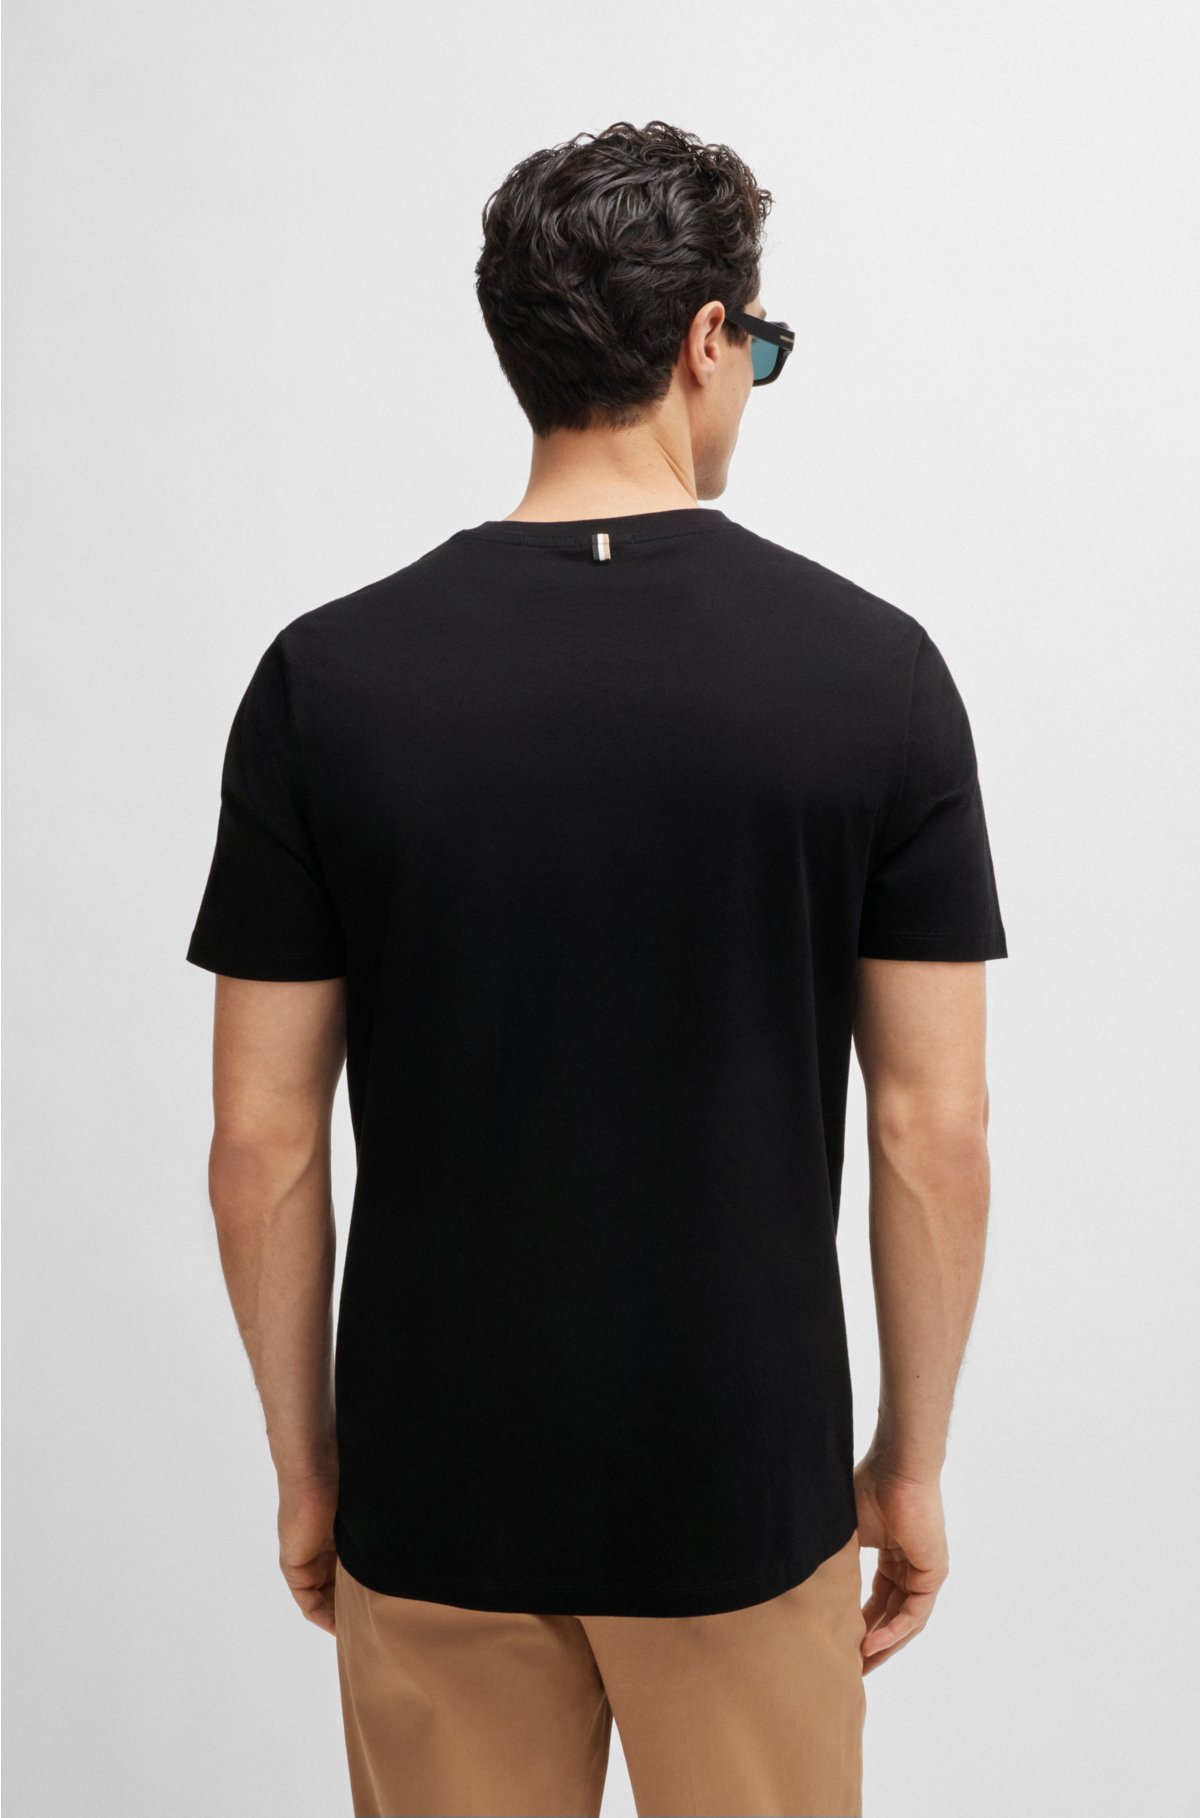 T-shirt BOSS in cotton mercerized - Slim-fit short-sleeved